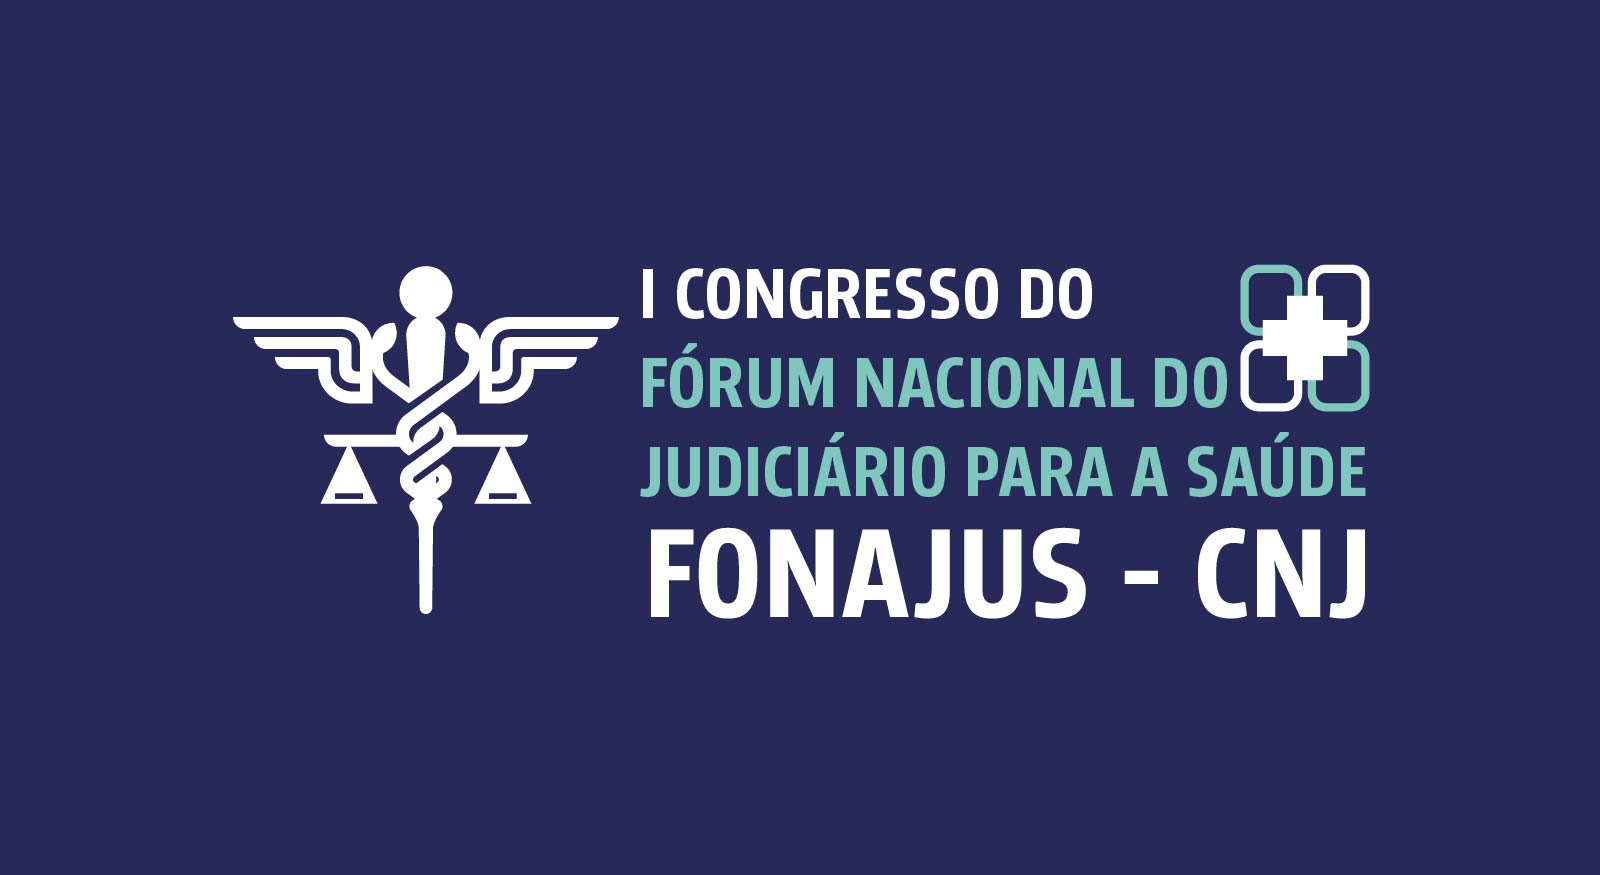 INSTITUCIONAL: Inscrições abertas para o I Congresso do Fonajus que discutirá judicialização da saúde e desafios das políticas públicas